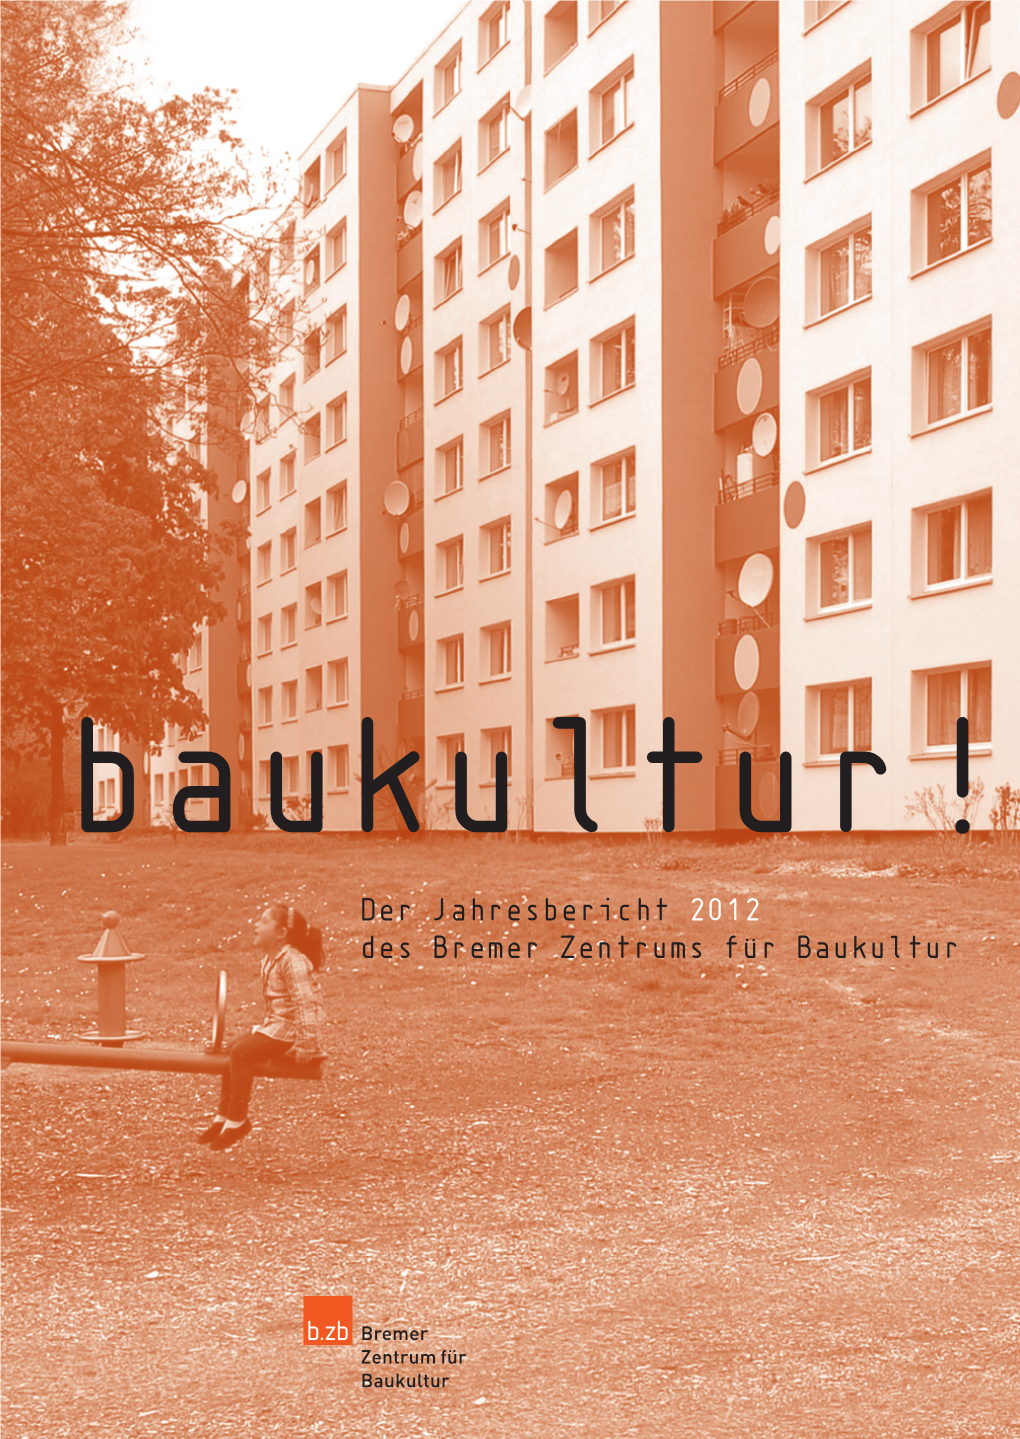 Bzb Baukultur! 2012.Indd